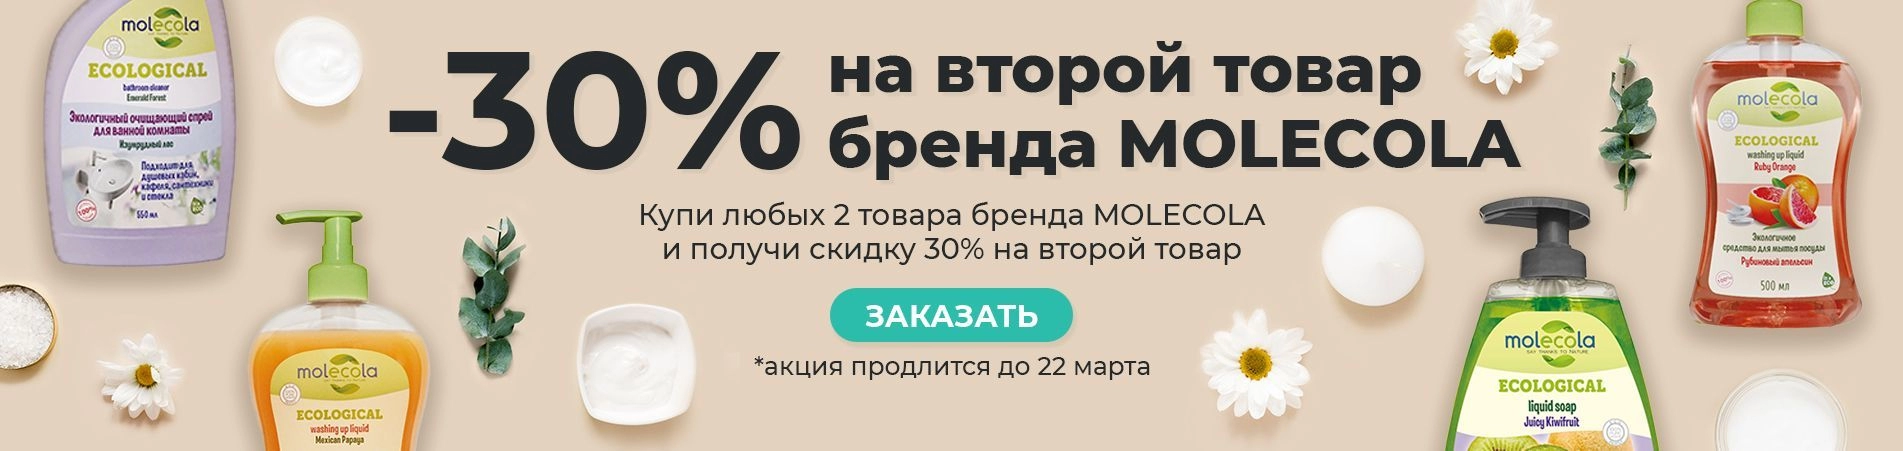 Экологичные средства для дома бренда MOLECOLA со скидкой -30%!